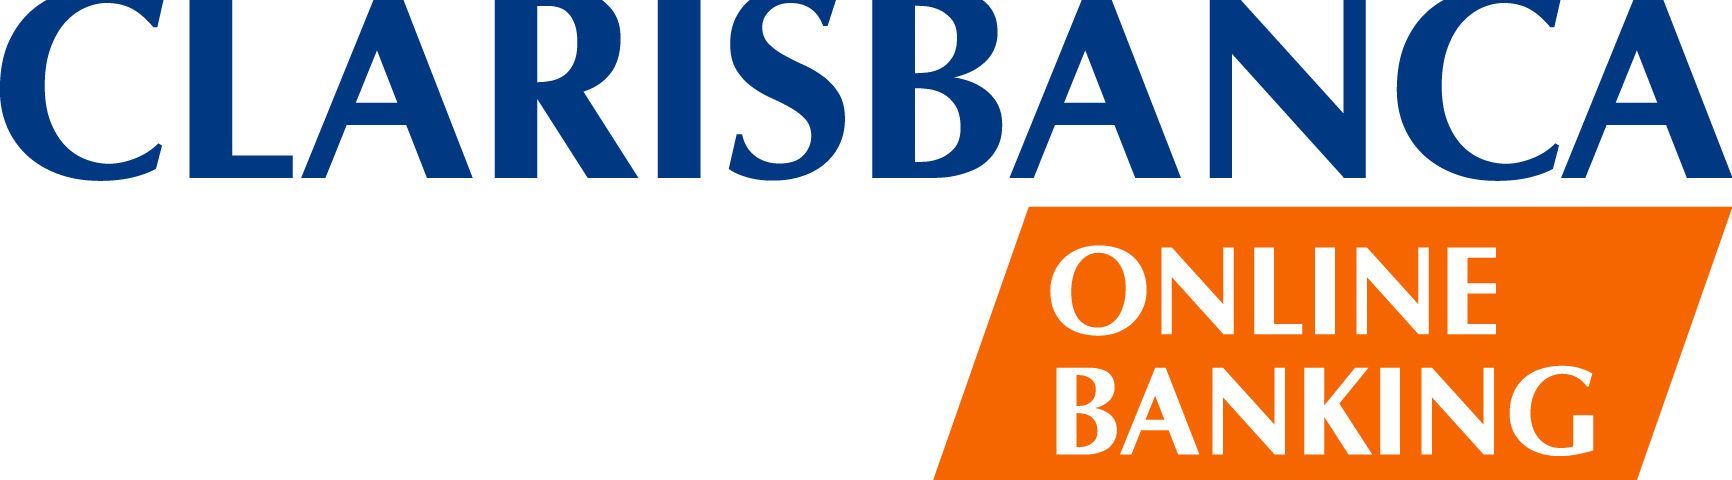 Clarisbanca Online Banking Che Servizi Offriva Meteofinanza Com